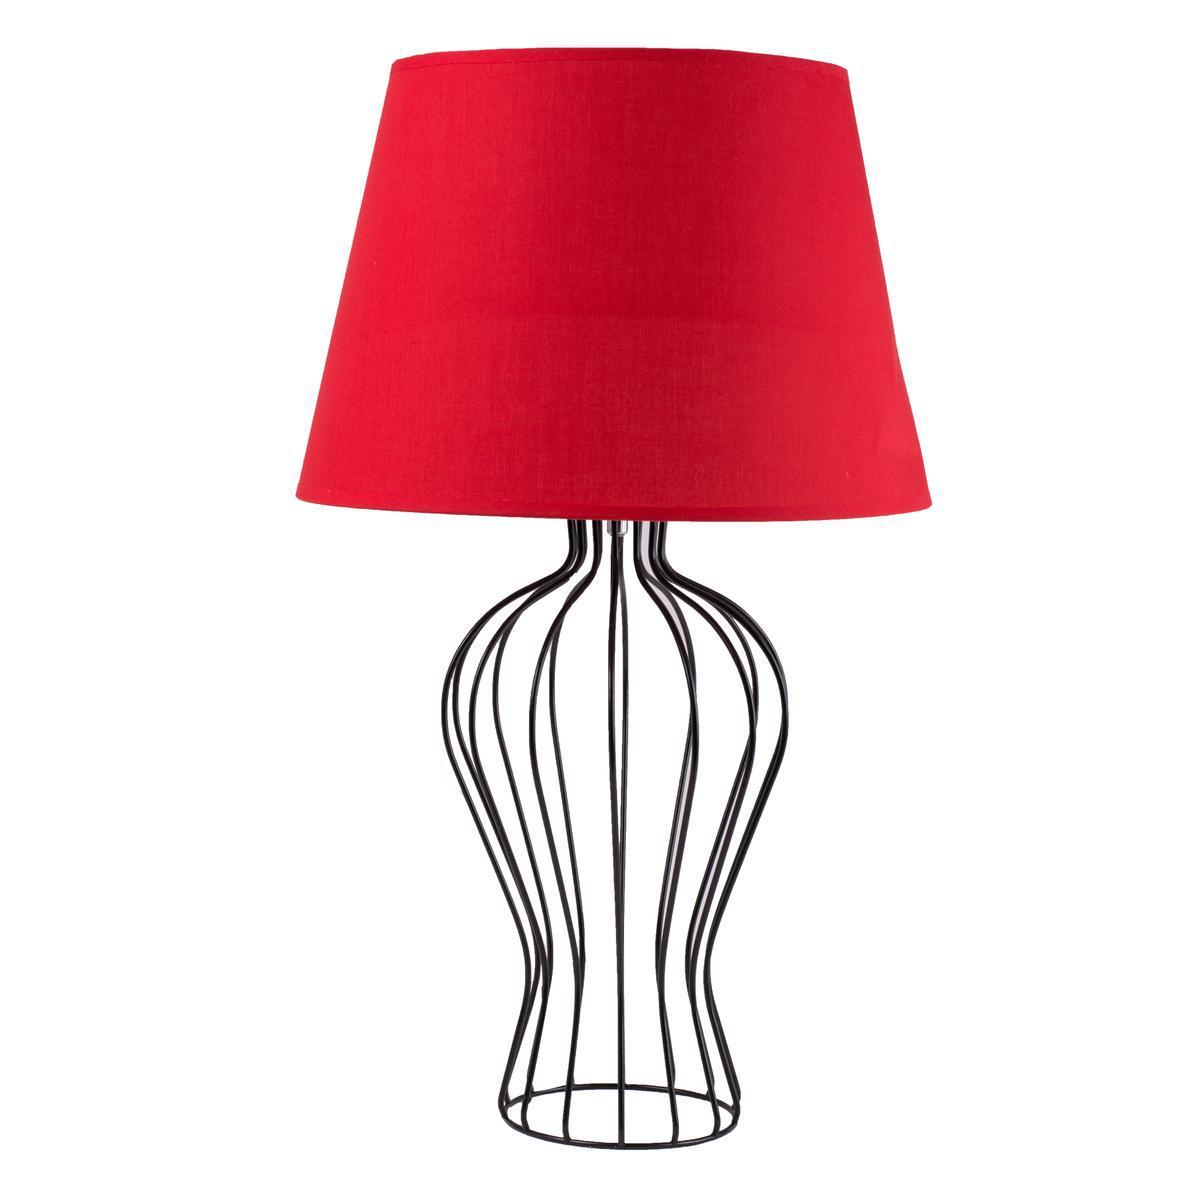 Lampe à poser - Acier, coton et polyester - Ø 34 x H 60 cm - Différents coloris